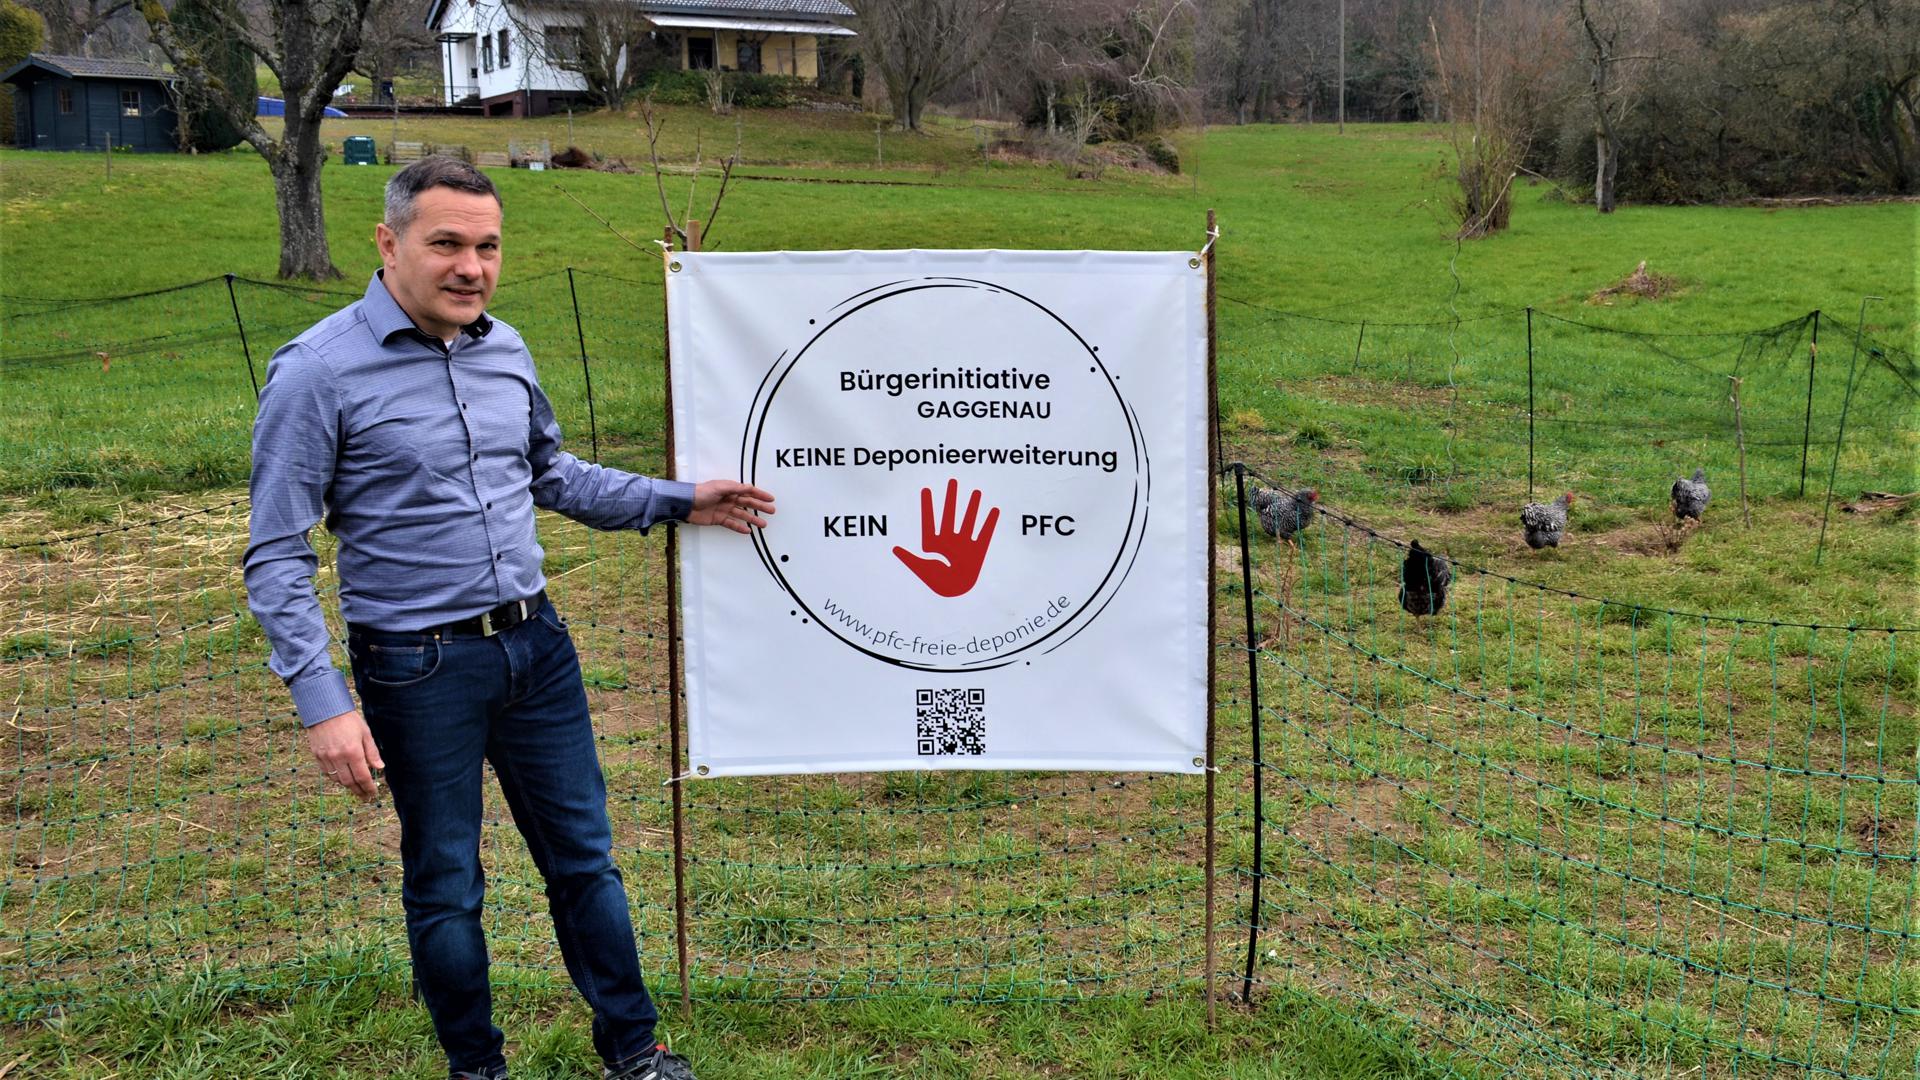 Markus Huster neben einem Plakat „Bürgerinitiative Gaggenau – Keine Deponieerweiterung – Kein PFC“